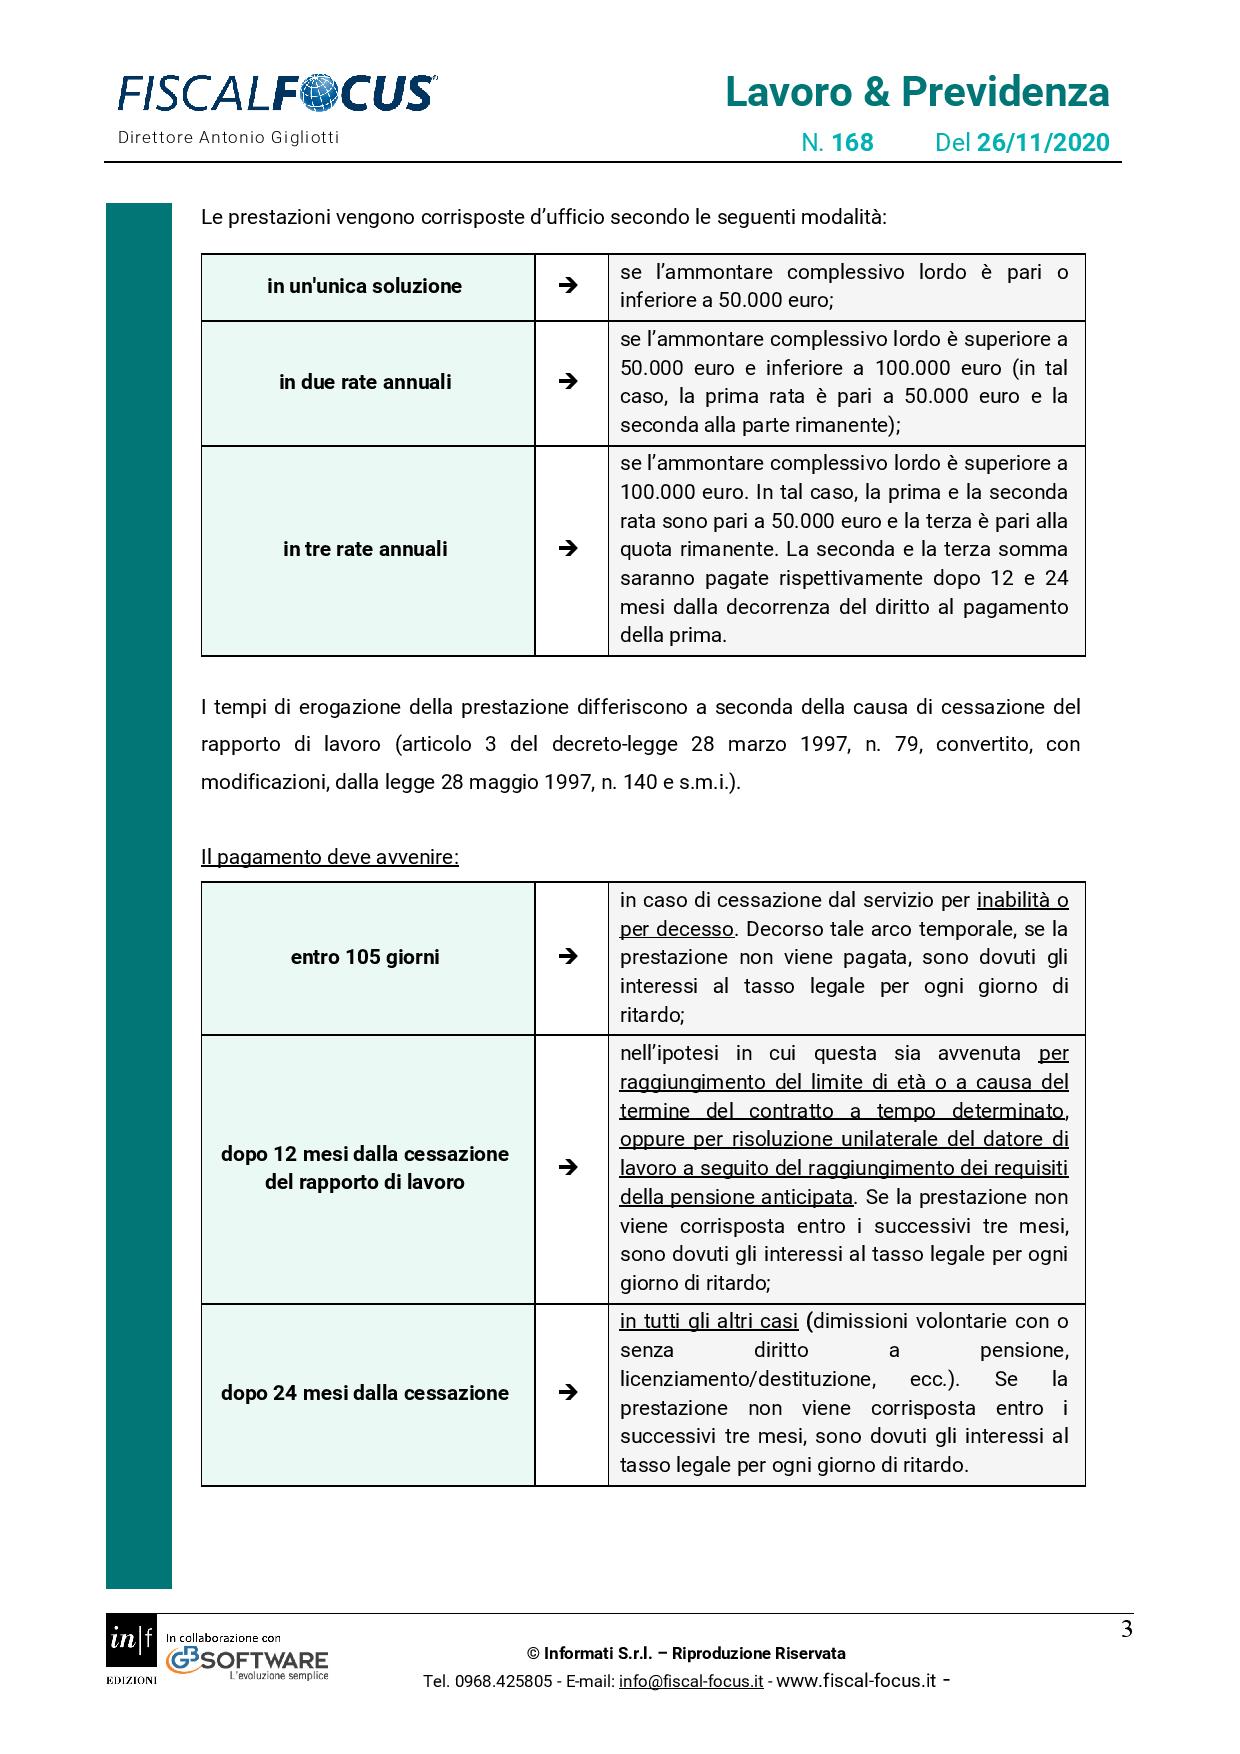 Lavoro e Previdenza n. 168 del 26.11.2020 TFS dipendenti pubblici page 003